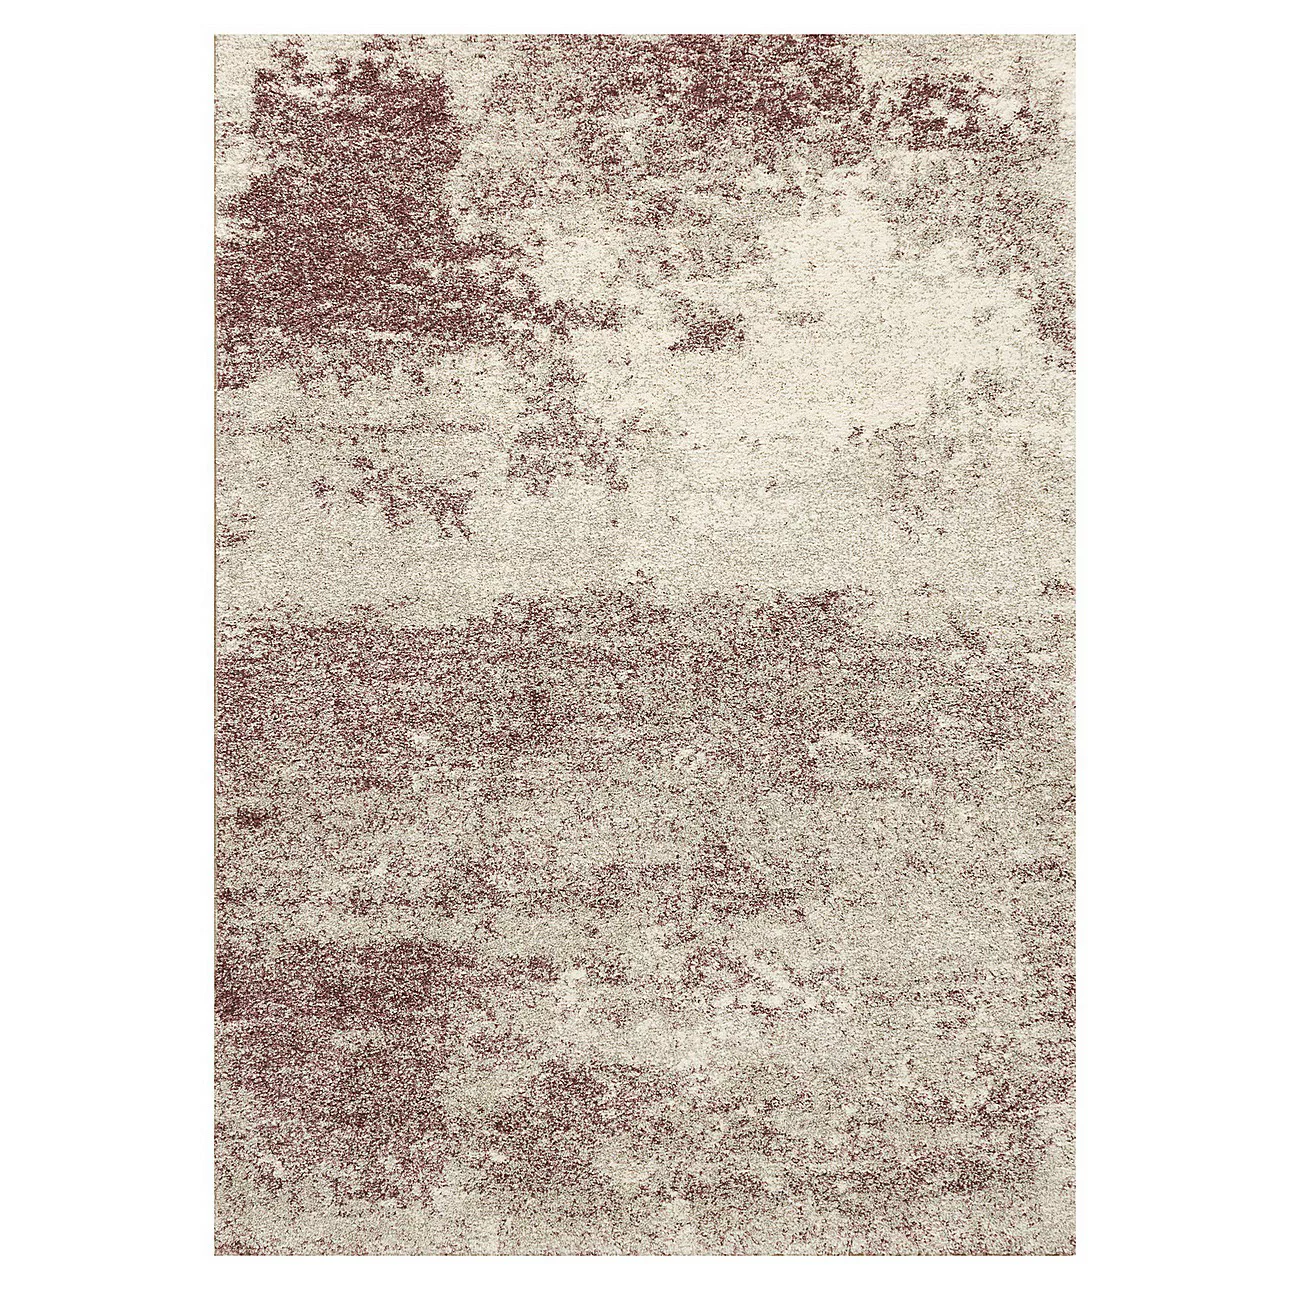 Teppich Softness silver/dusty lavender 120x170cm, 120x170cm günstig online kaufen